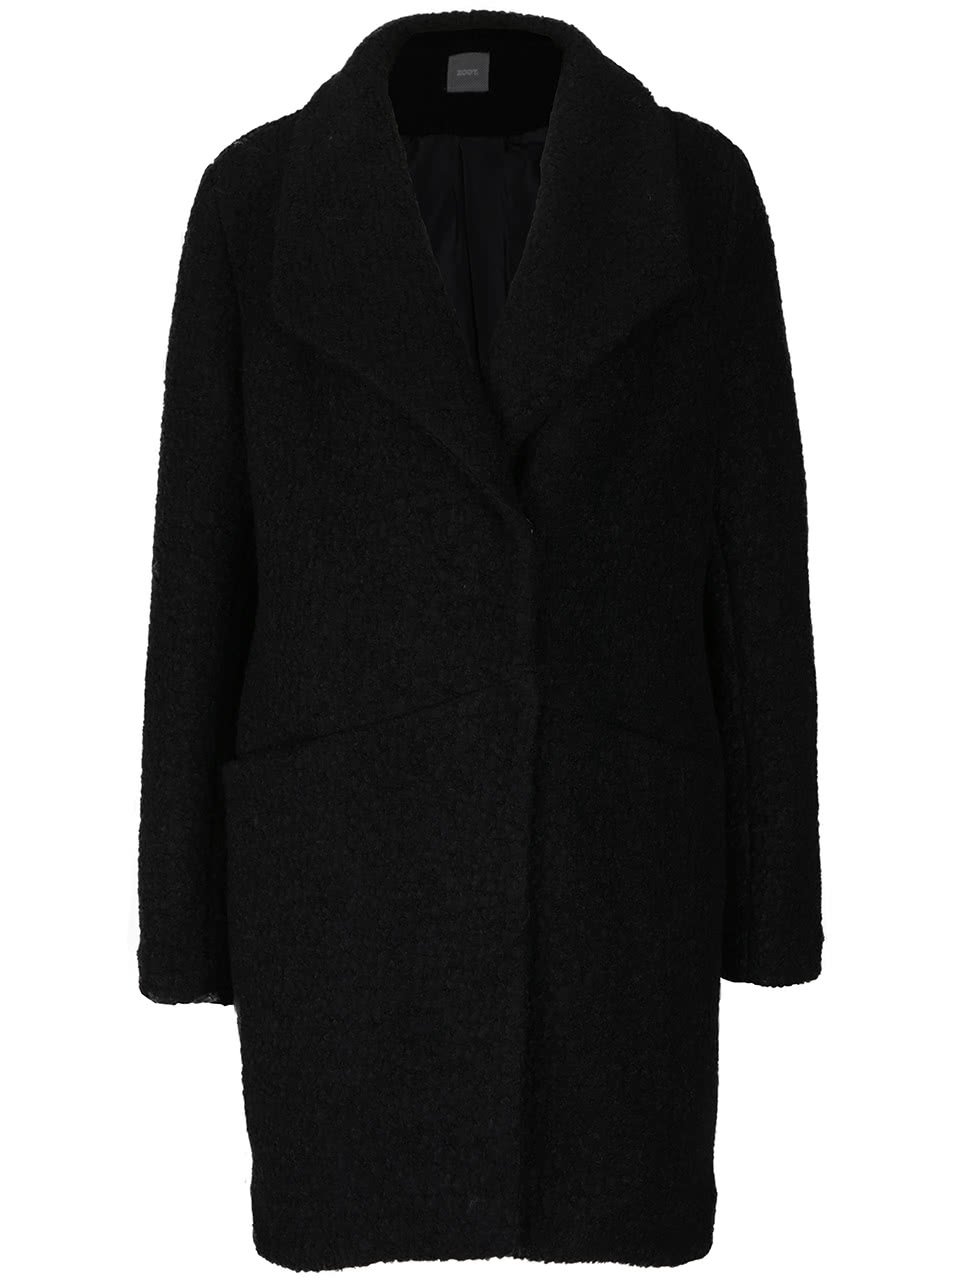 Černý vlněný kabát ZOOT